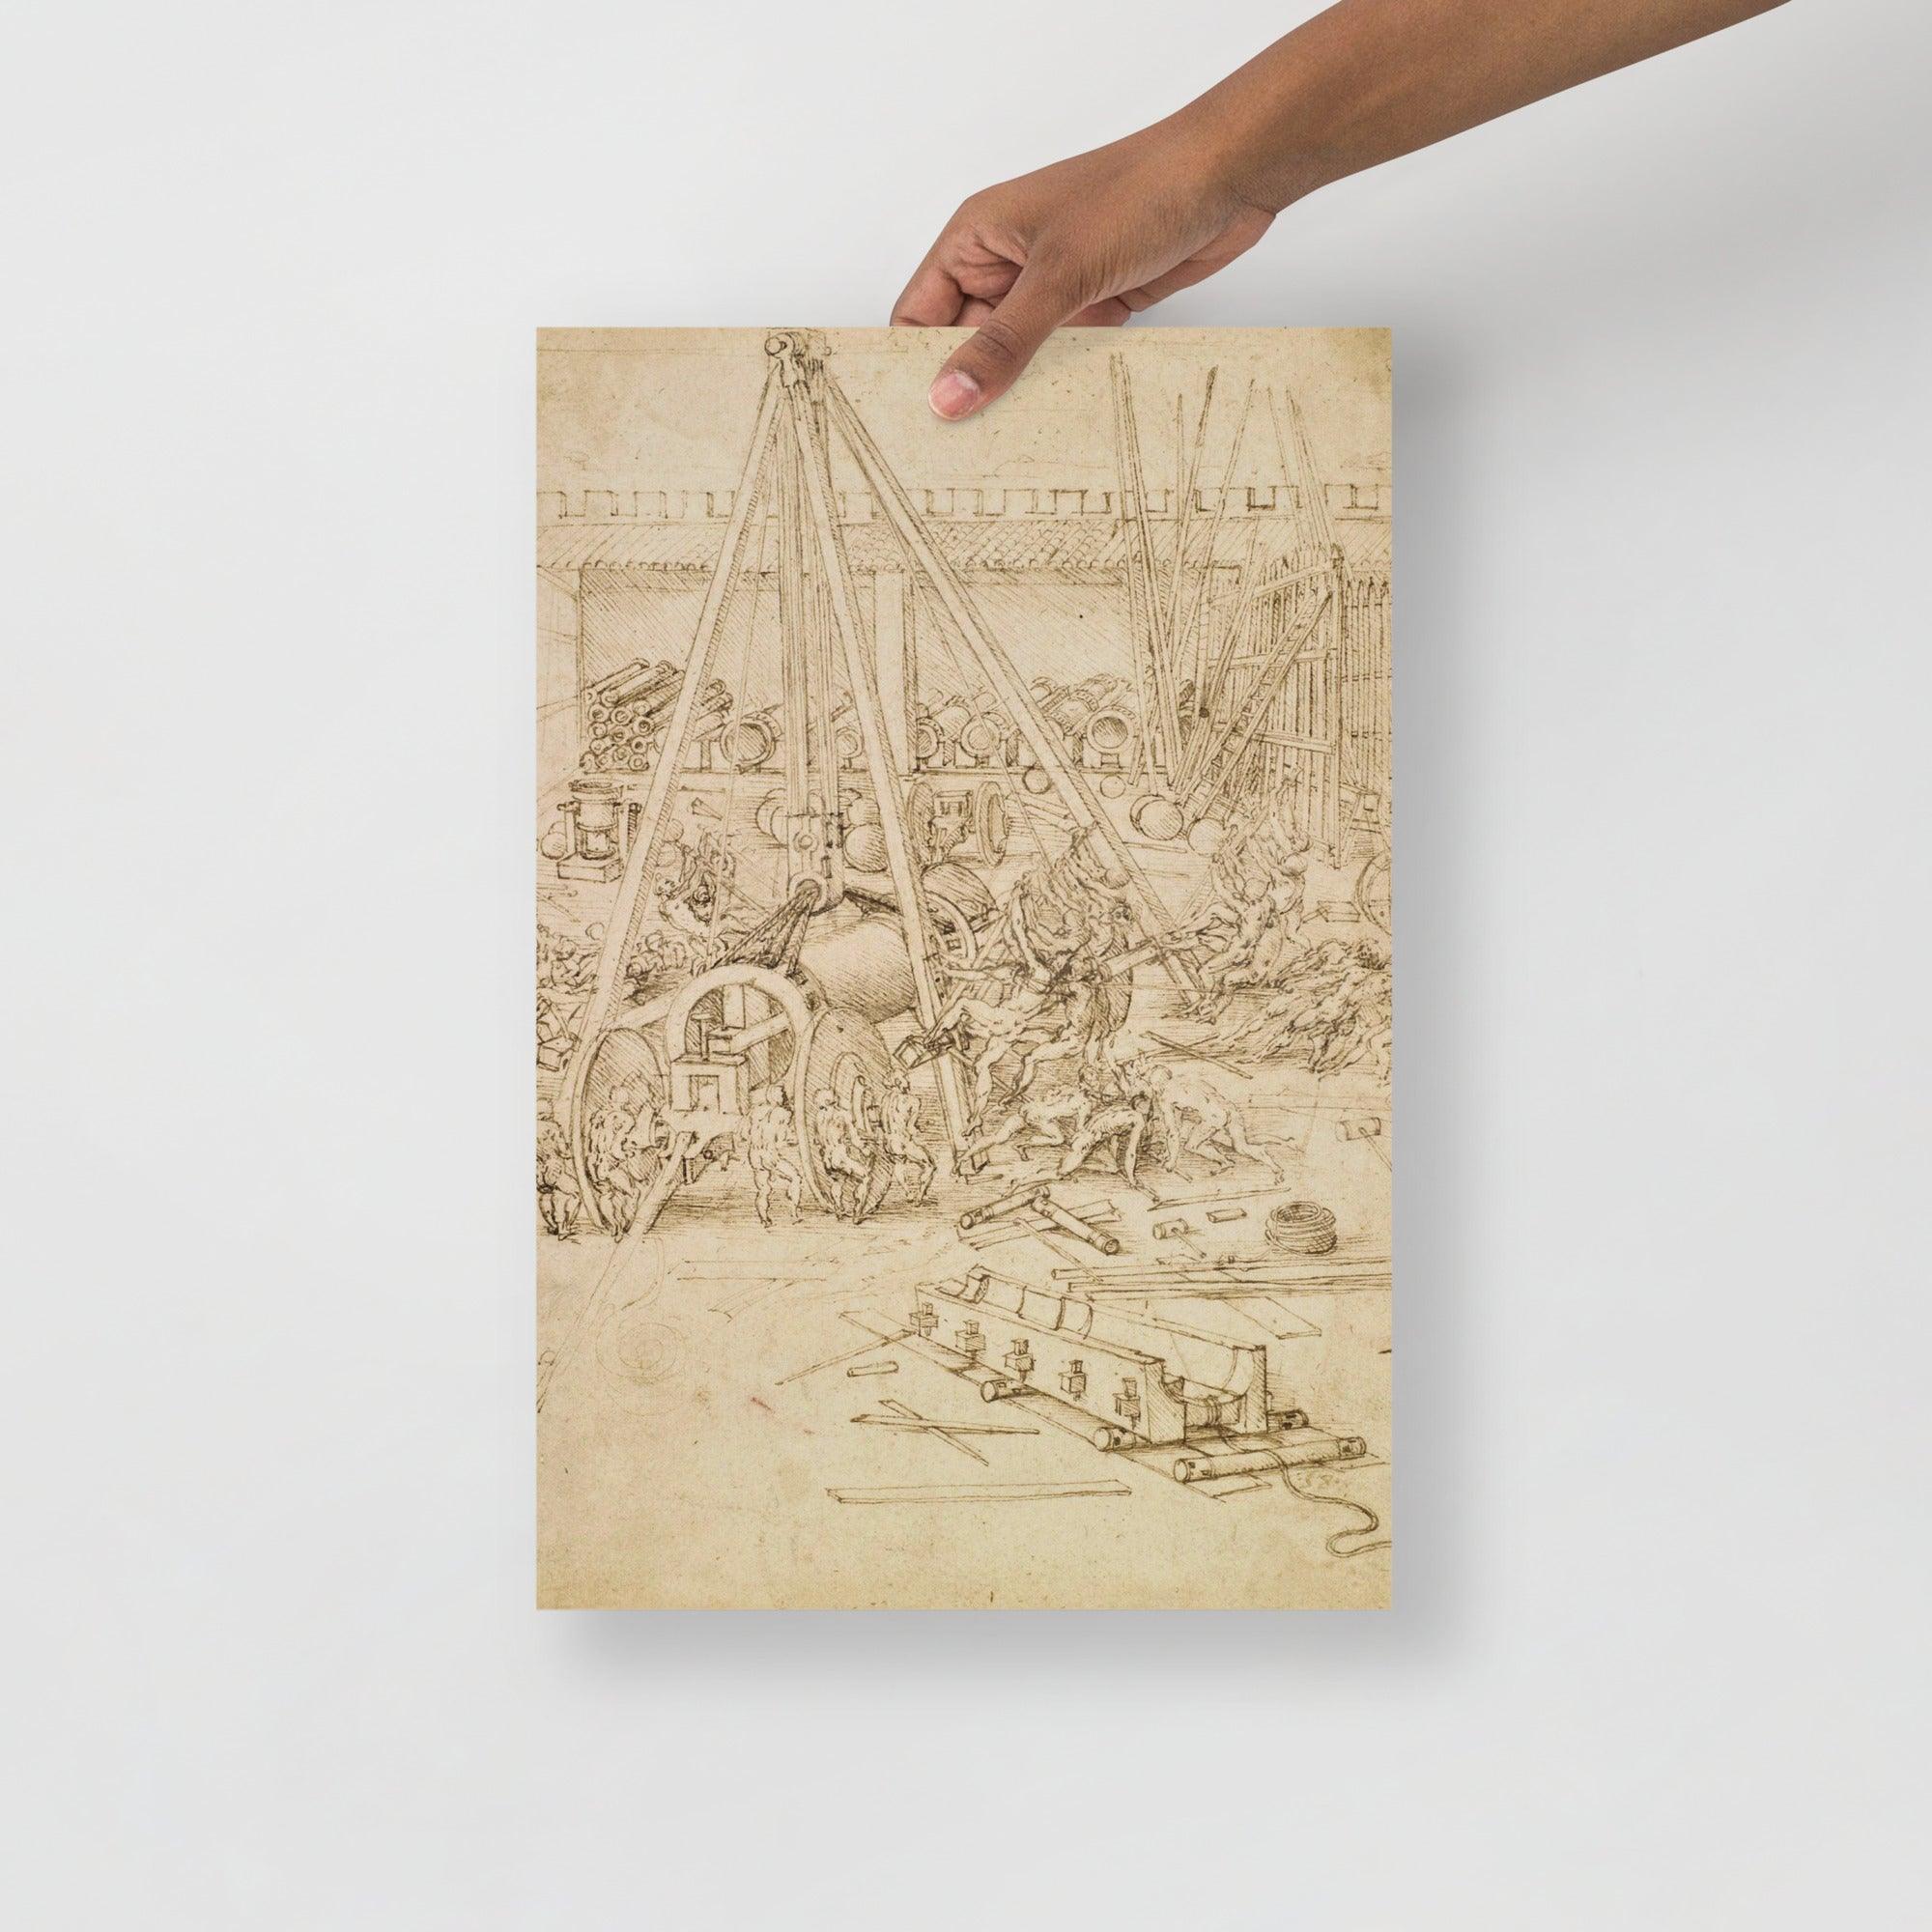 A Scene in an Arsenal by Leonardo Da Vinci poster on a plain backdrop in size 12x18”.